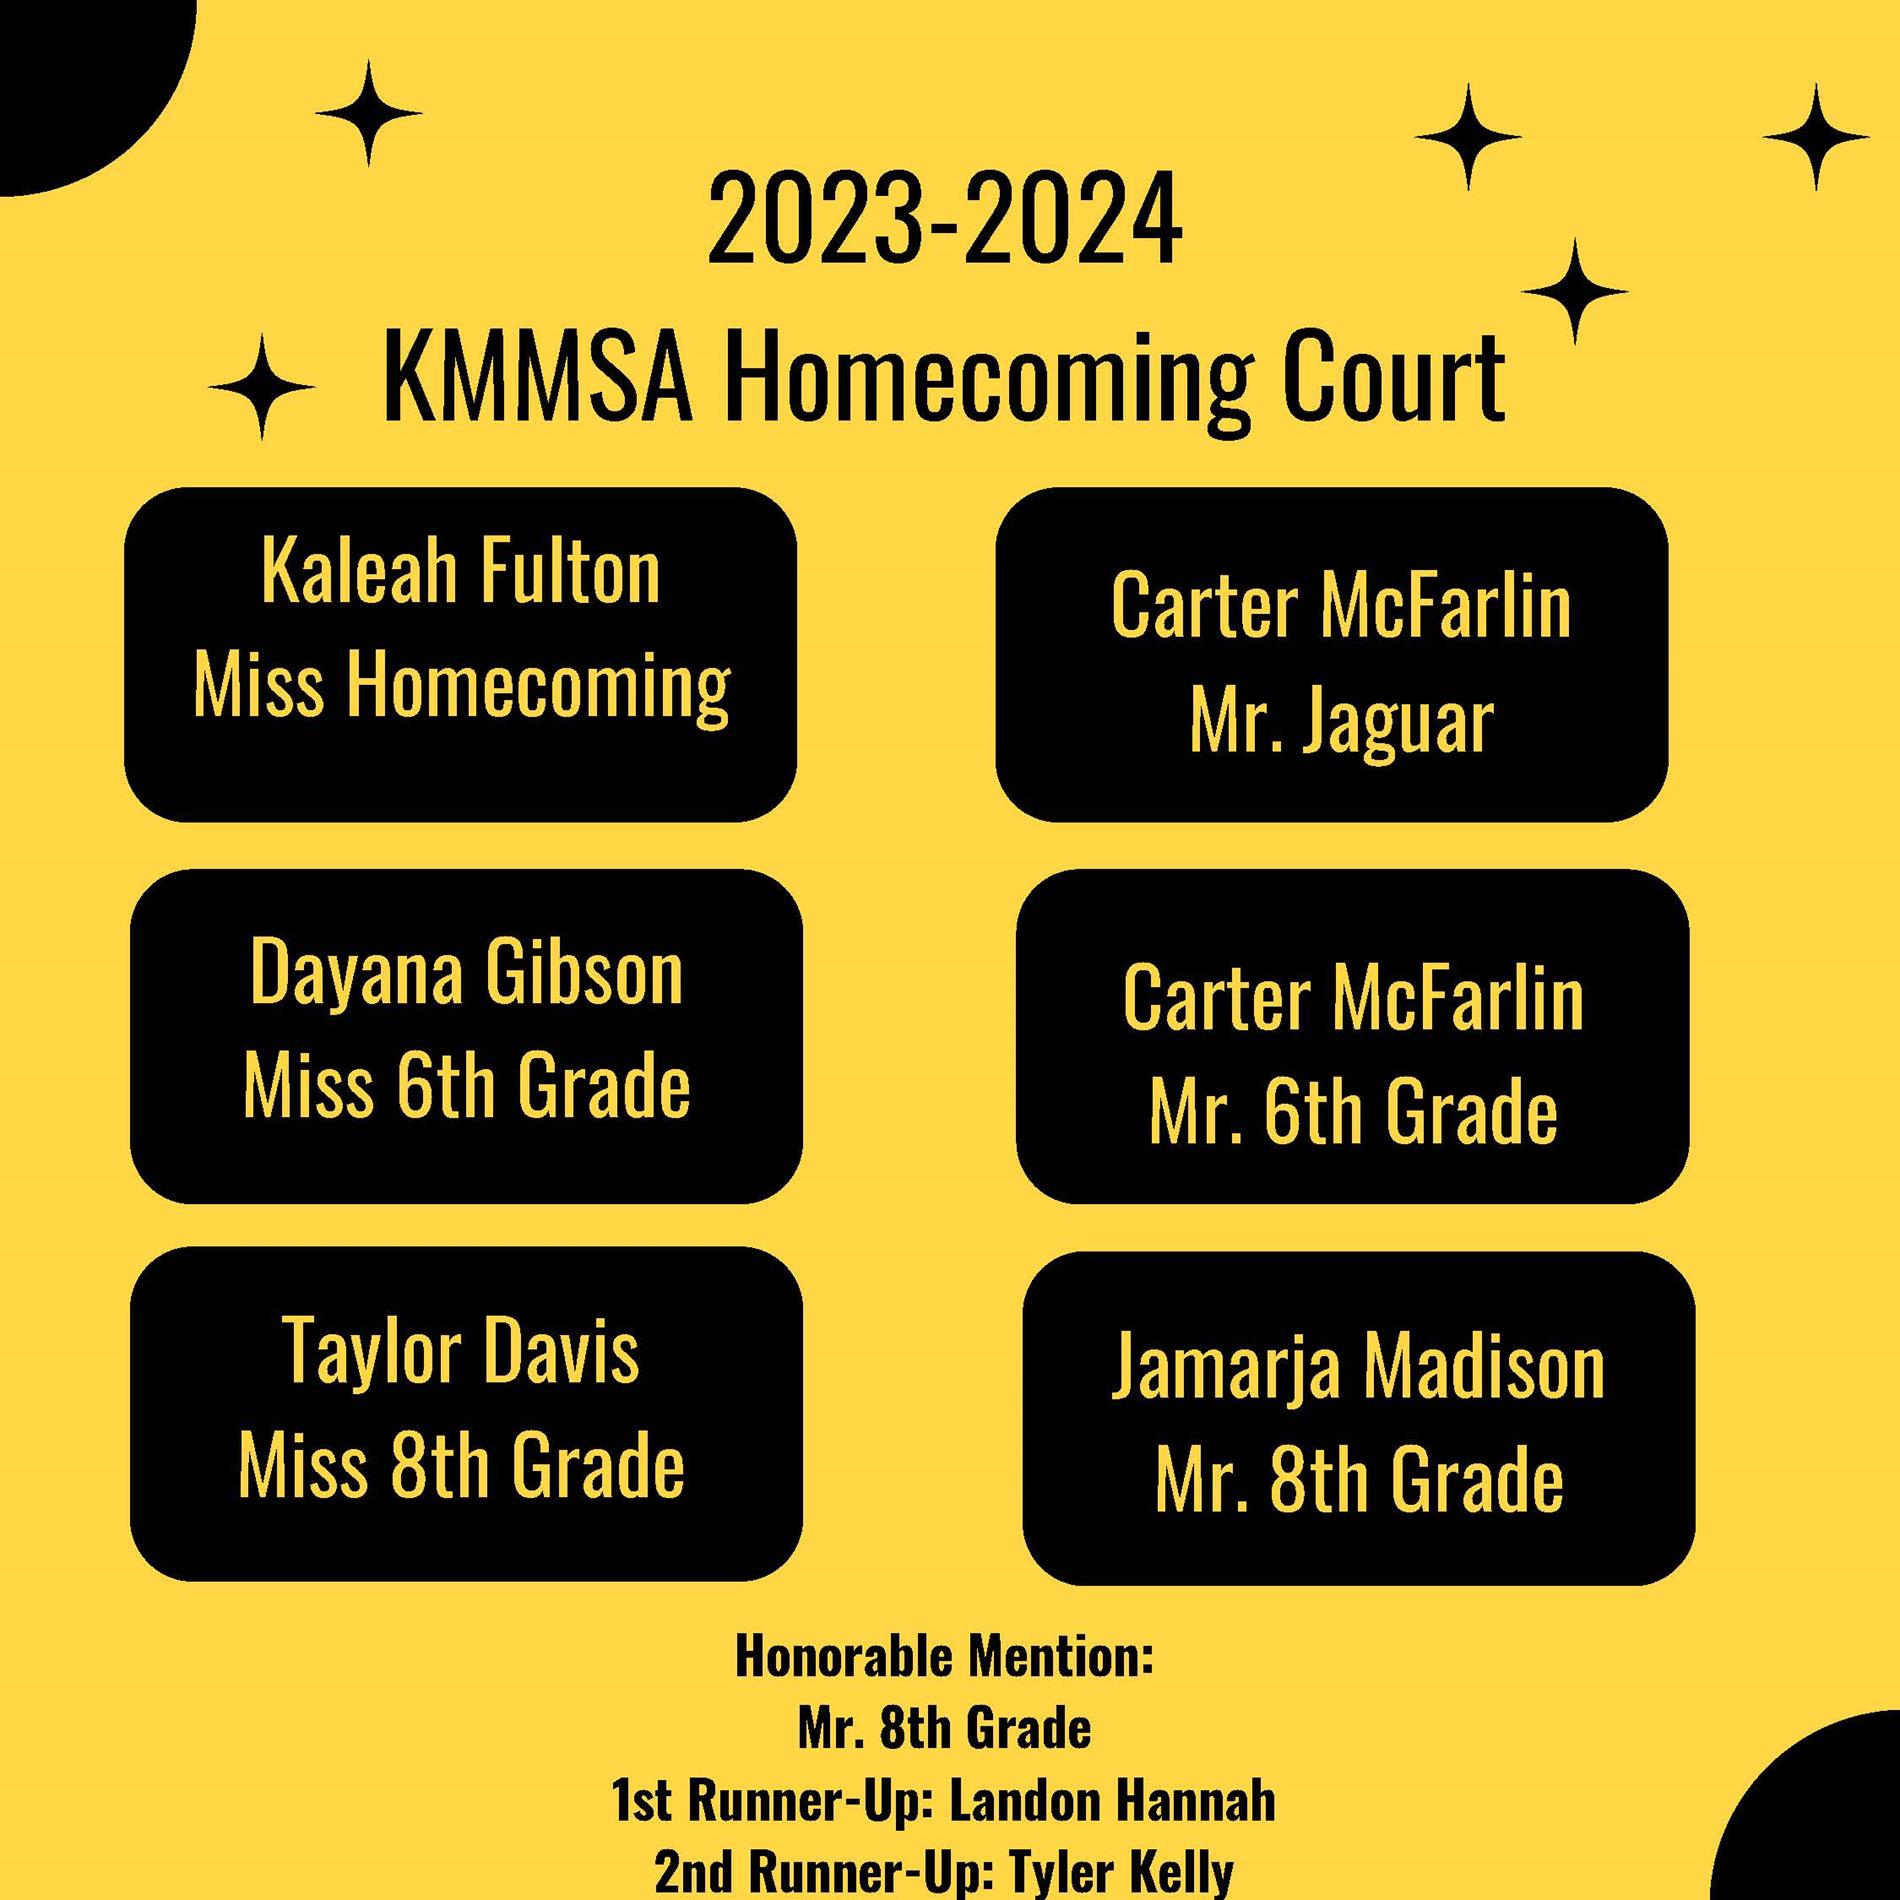 2023-2024 KMMSA Homecoming Court